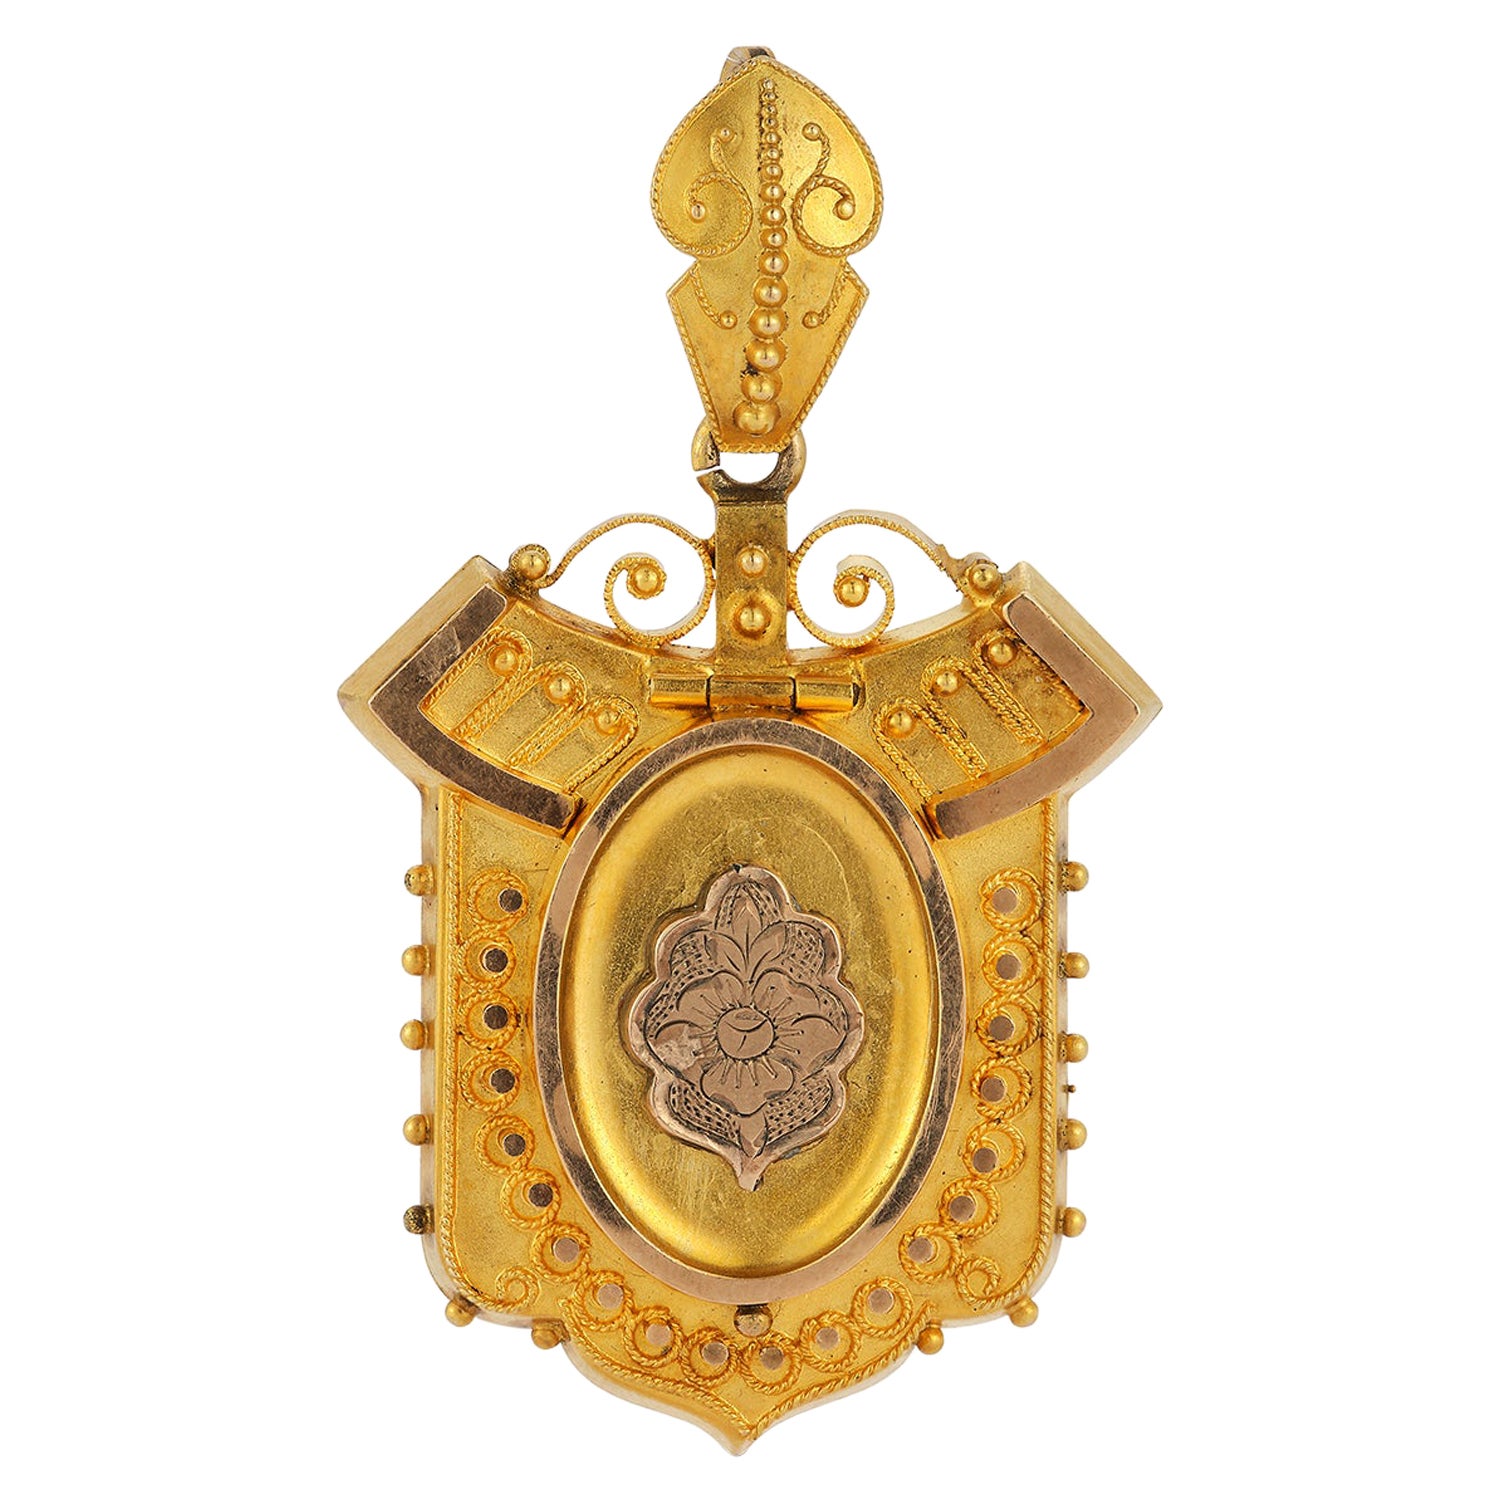 Großes viktorianisches etruskisches Revival-Medaillon aus 15k Gold